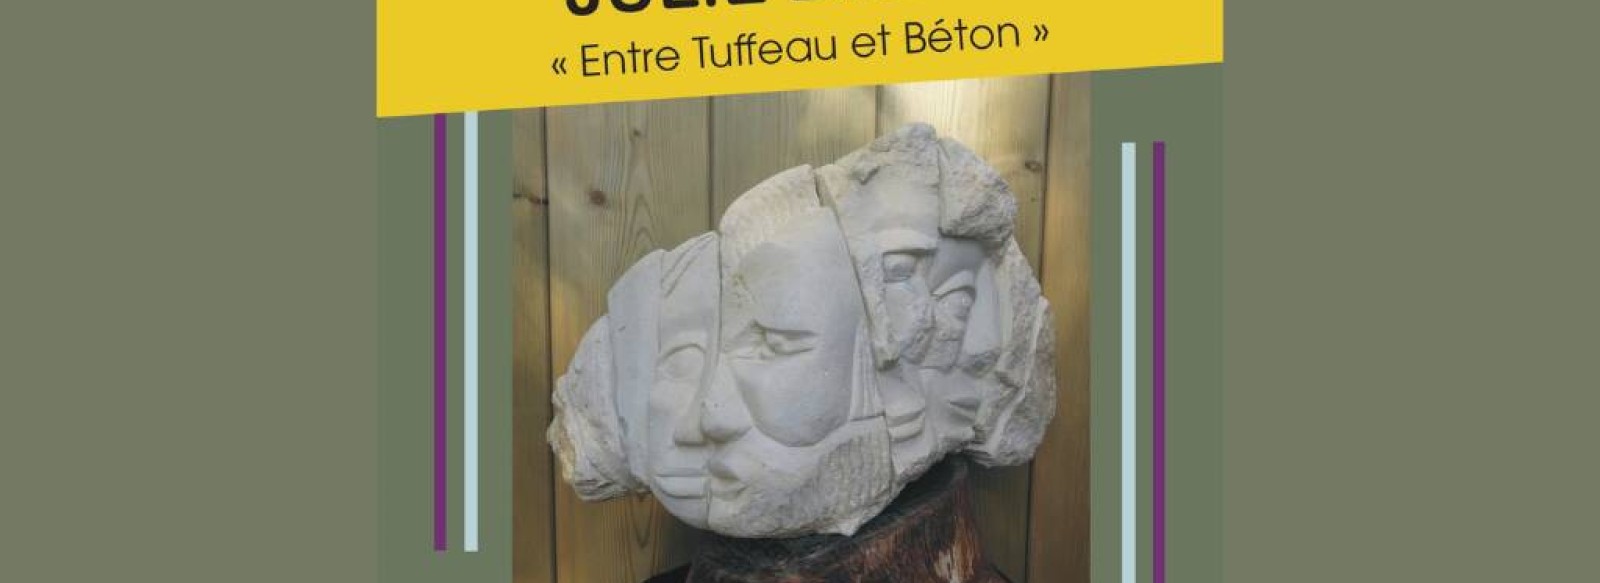 EXPOSITION "Entre truffeau et beton " de J. Breda sculpture